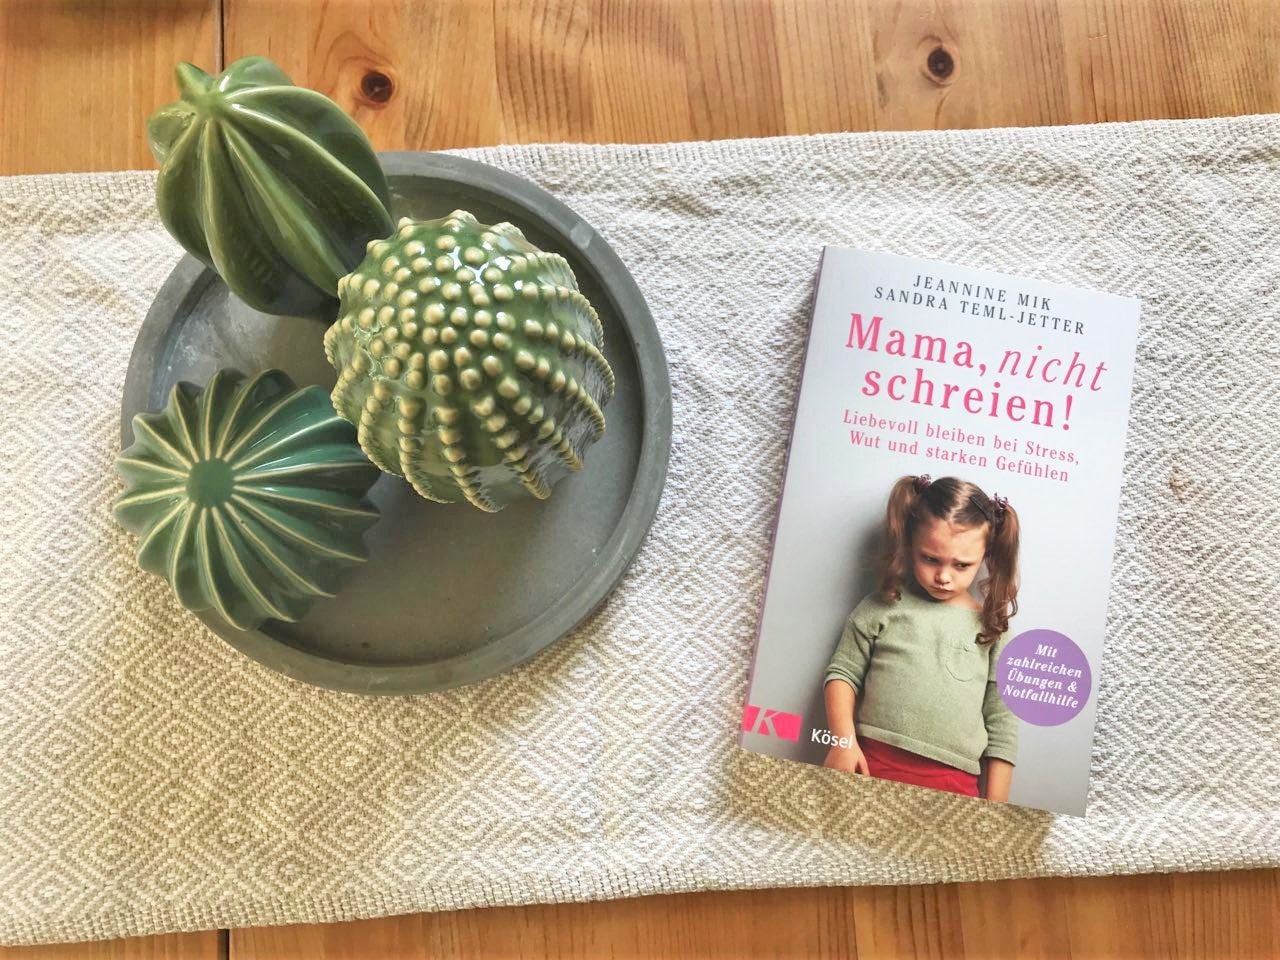 Rezension: Mama, nicht schreien! Von Jeannine Mik und Sandra Teml-Jetter - Mehr Infos zum Elterngatgeber auf Mamaskind.de